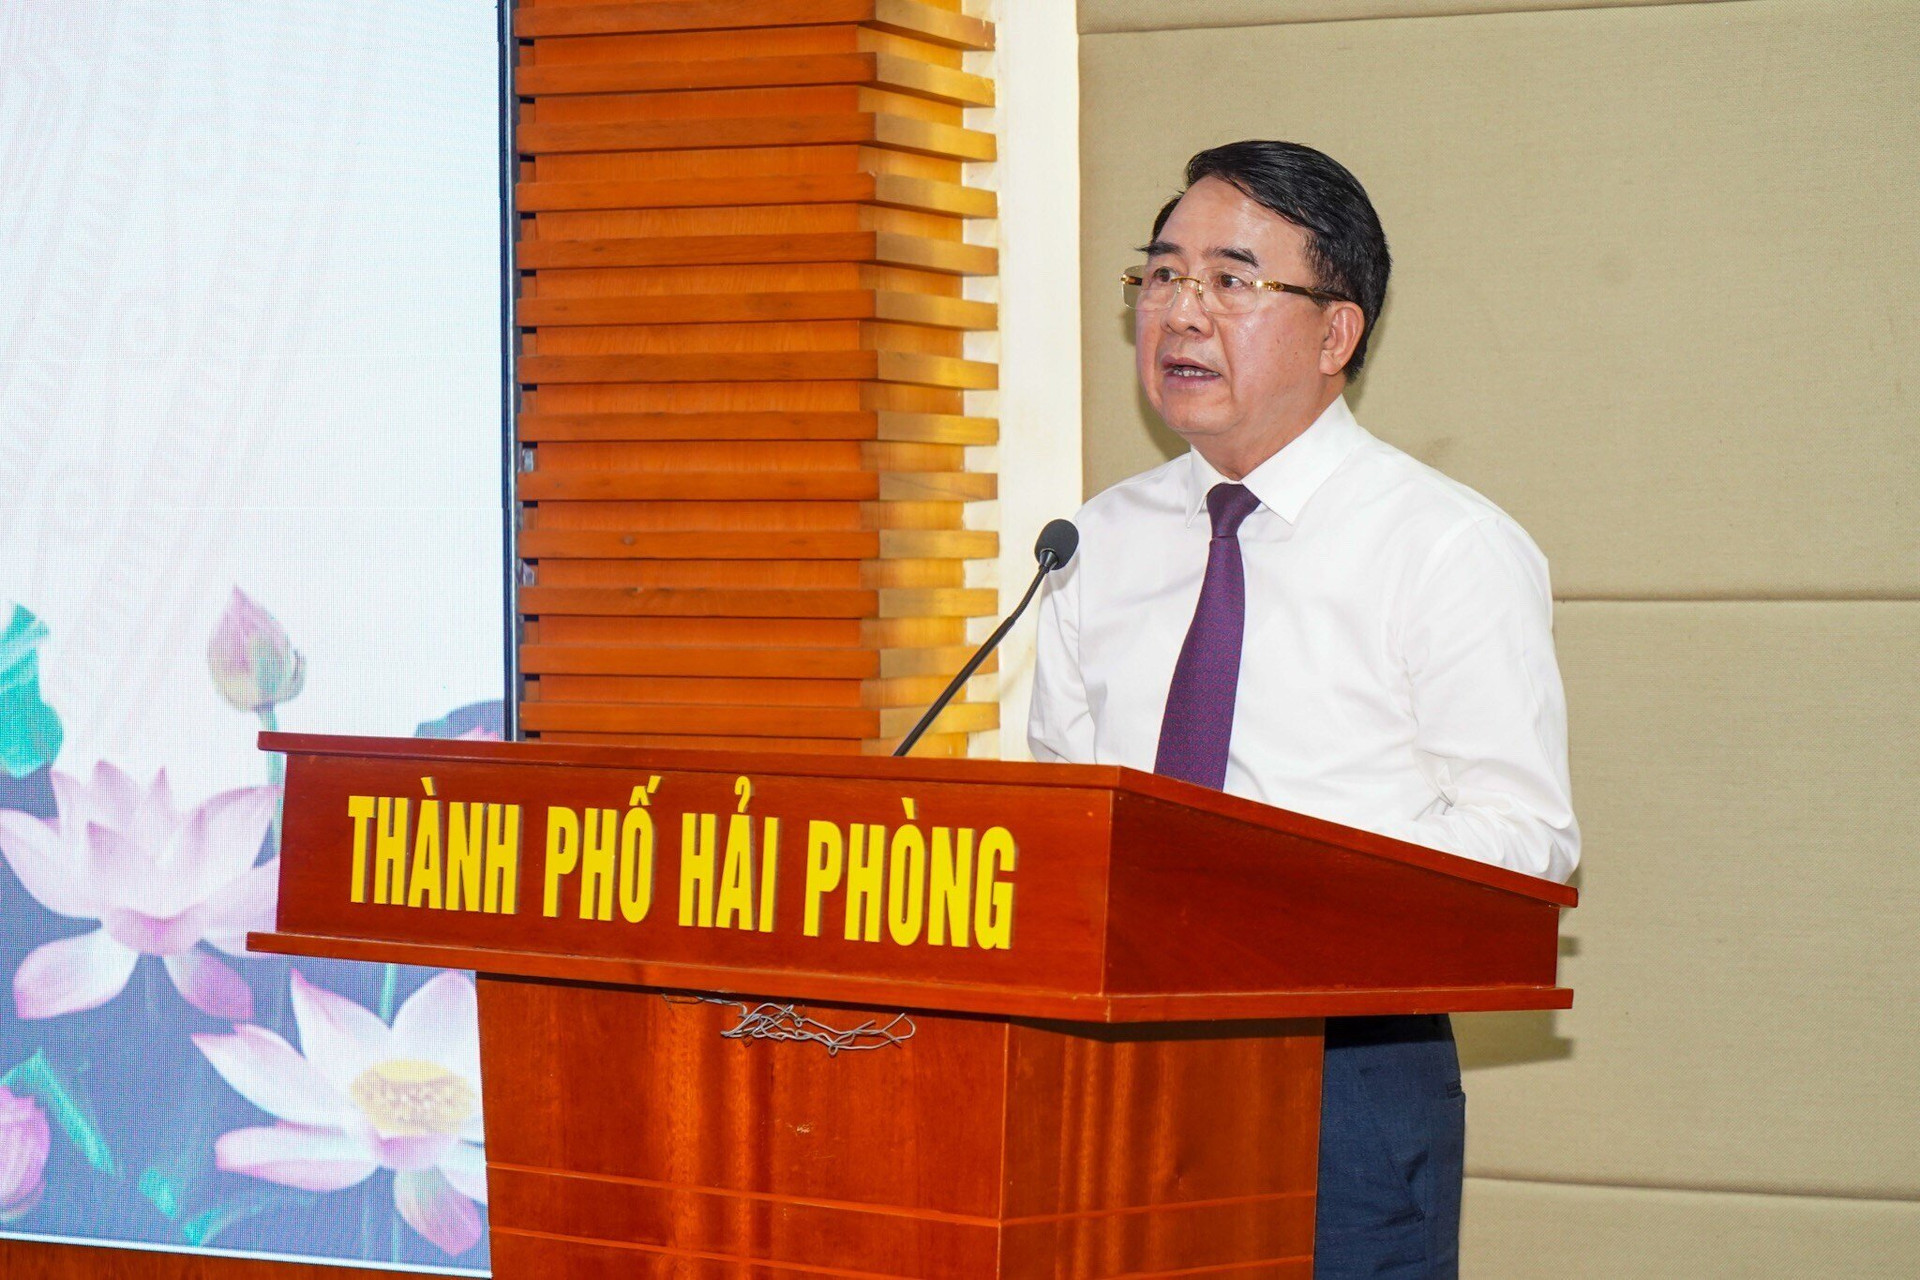 Phó Chủ tịch UBND TP Hải Phòng Lê Khắc Nam biểu dương những nỗ lực, khổ luyện, quyết tâm, ý chí, bản lĩnh thi đấu của xạ thủ Phạm Quang Huy.